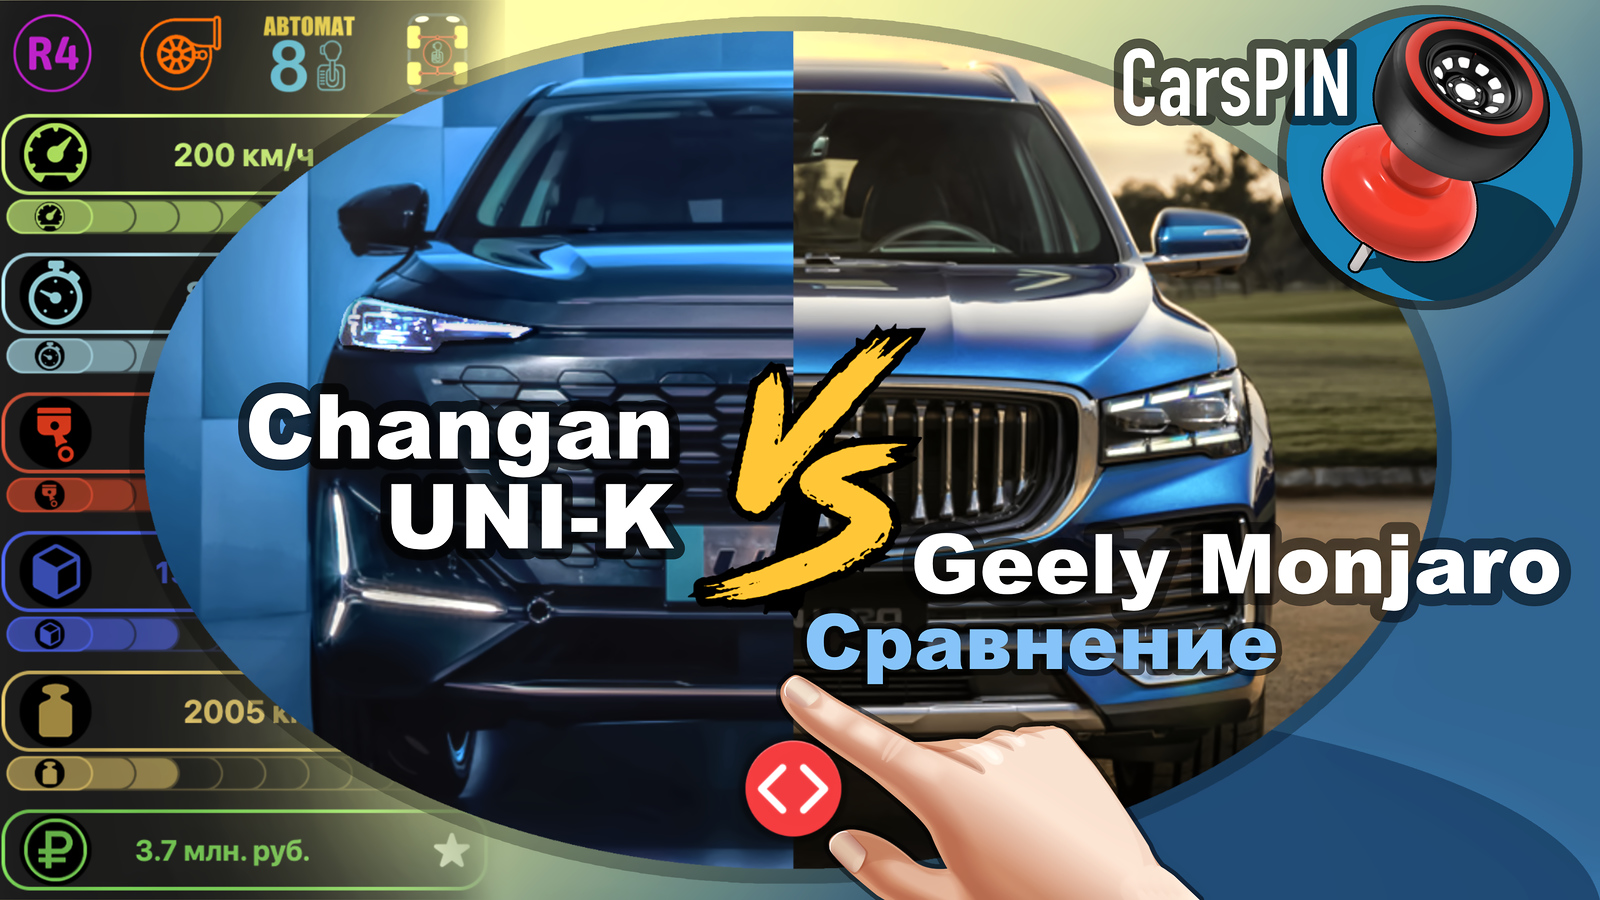 Видеосравнение автомобиля Changan UNI-K